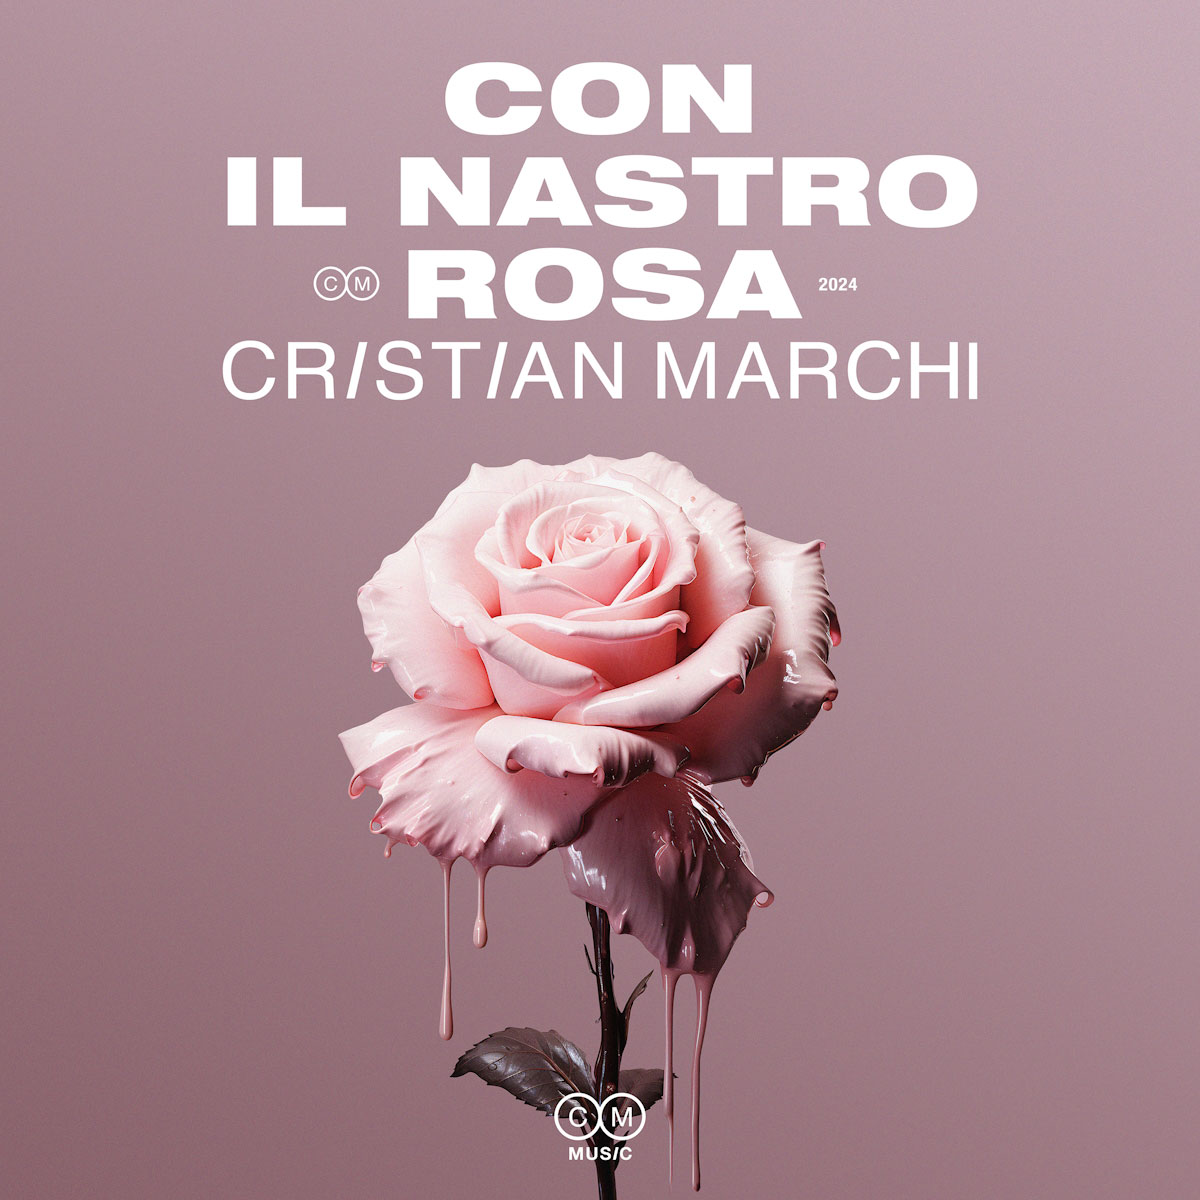 “Con il nastro rosa” 2024 è il nuovo singolo di Cristian Marchi